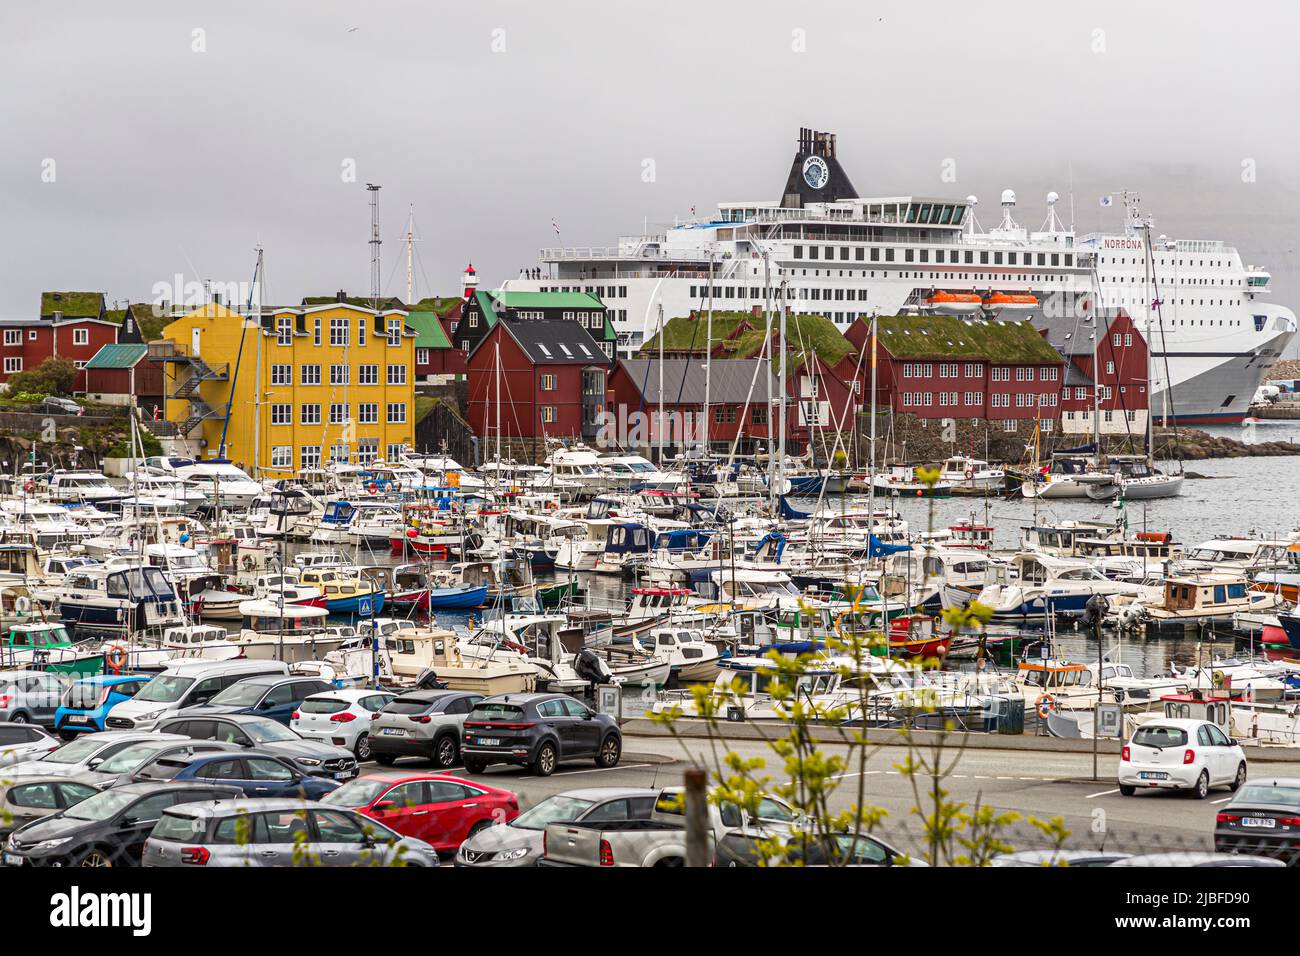 Il Norröna della linea di Smyril è ancorato nel porto di Tórshavn sulle Isole Faroe. Foto Stock